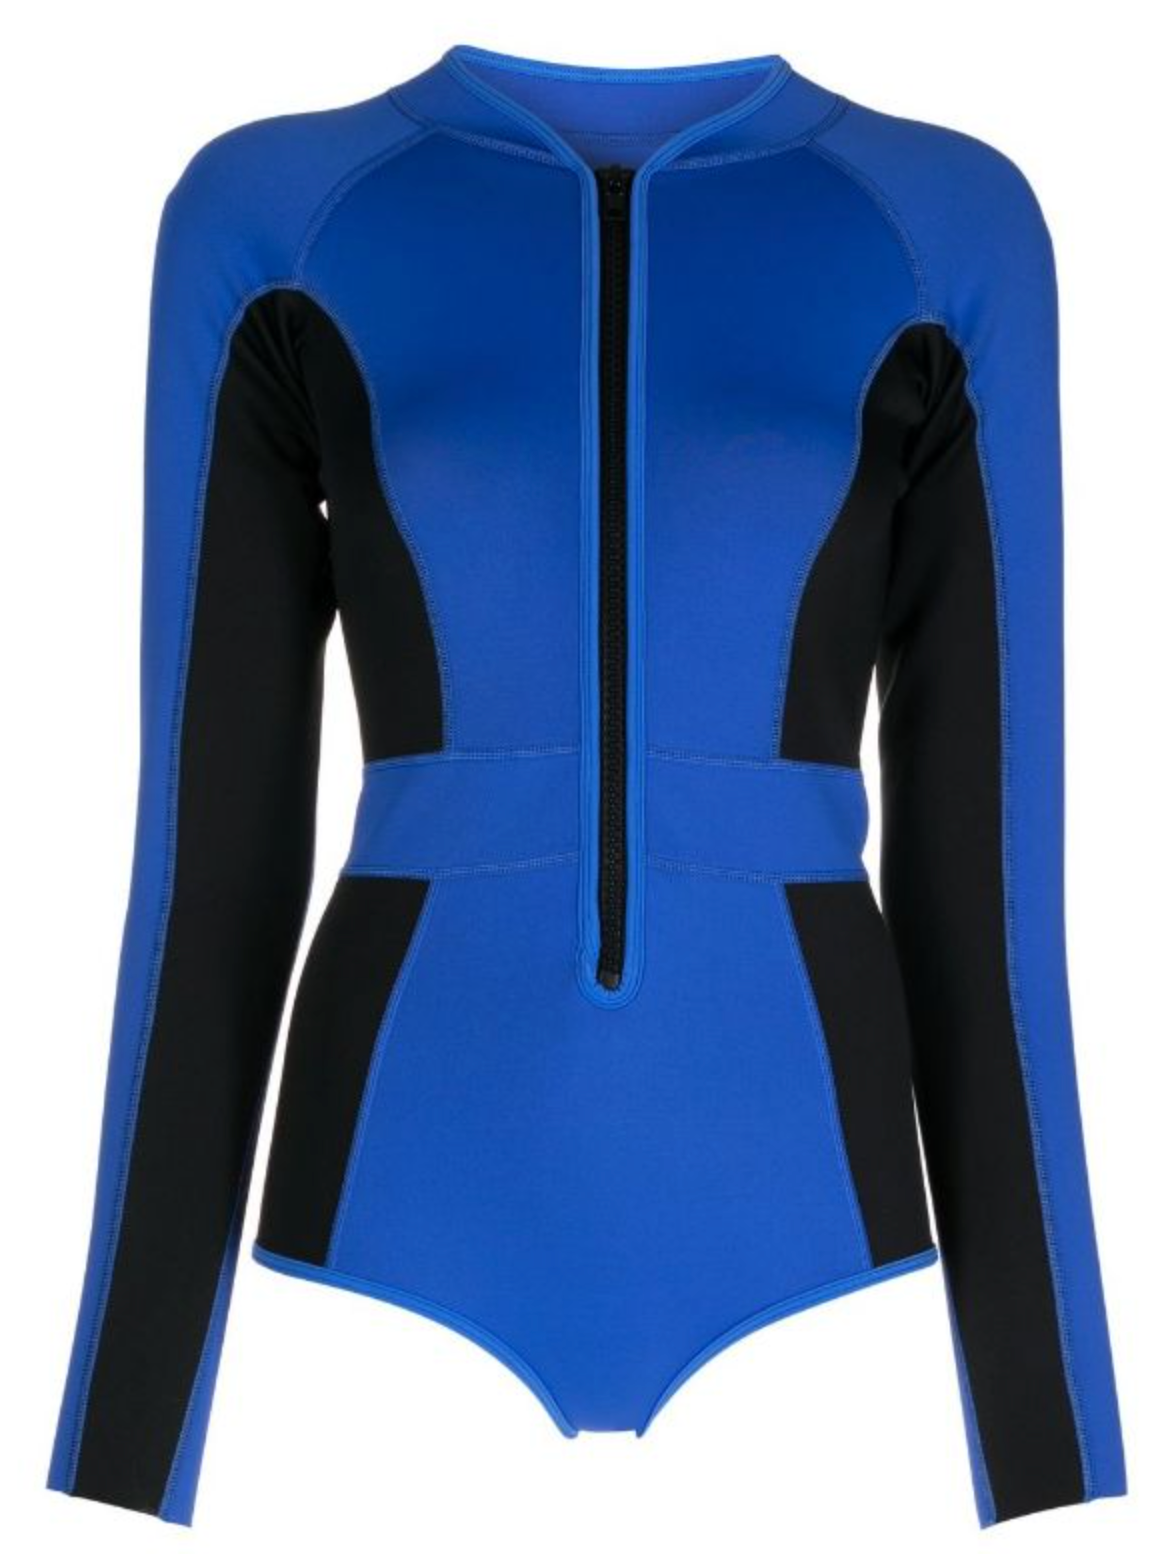 New Delfin Spa Neoprene Fitness Tankini Top - Black/ Blue - Large